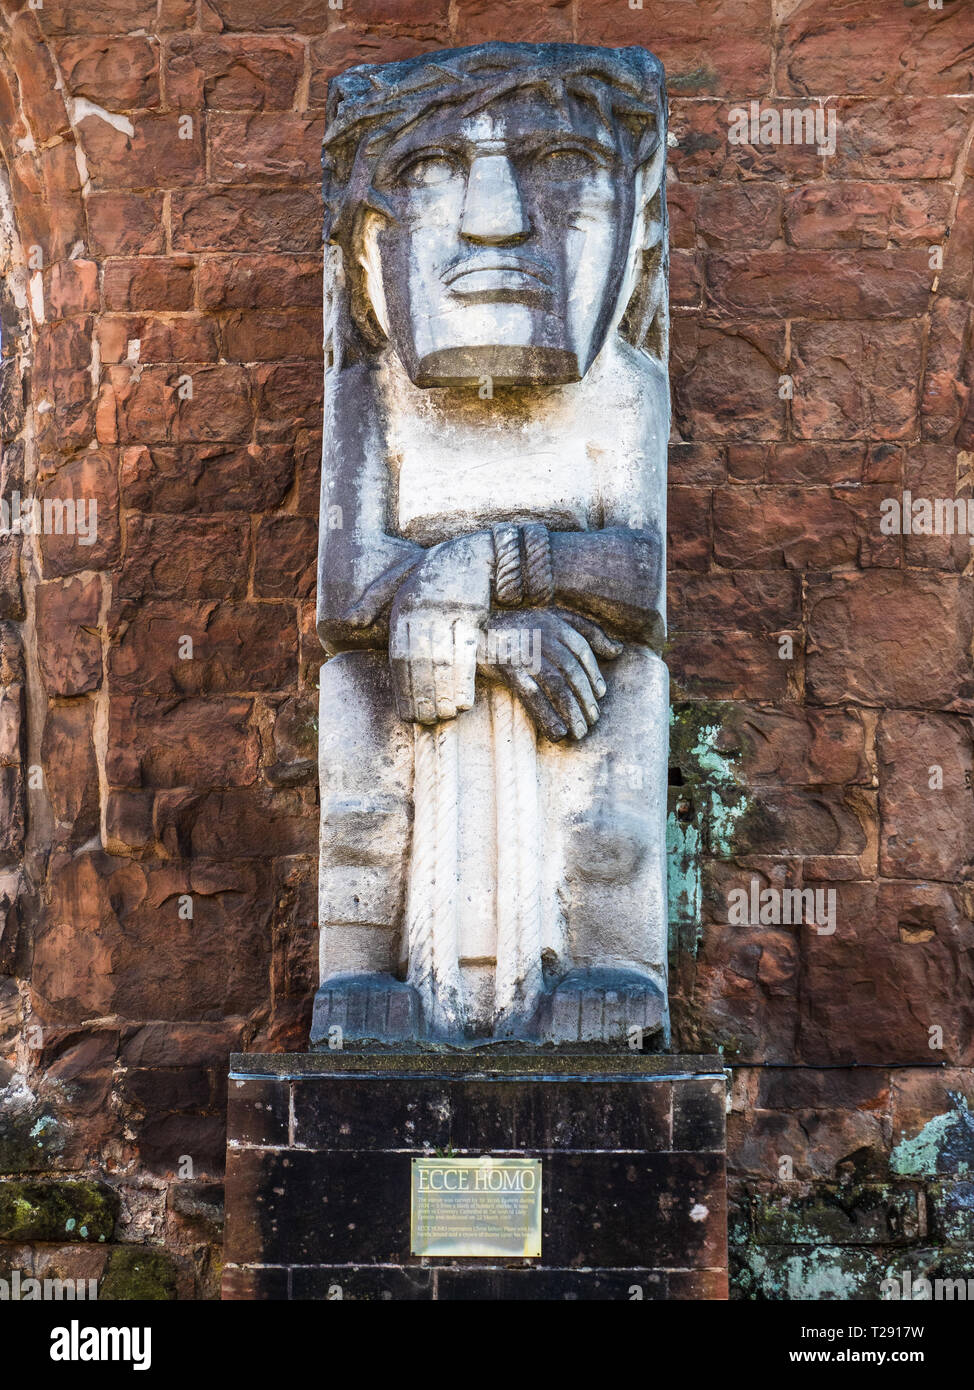 Jacob Epstein statue Ecce Homo (1934-35) Kathedrale von Coventry. Von seiner Witwe nach seinem Tod gespendet, steht in den Ruinen der alten Kathedrale. Stockfoto